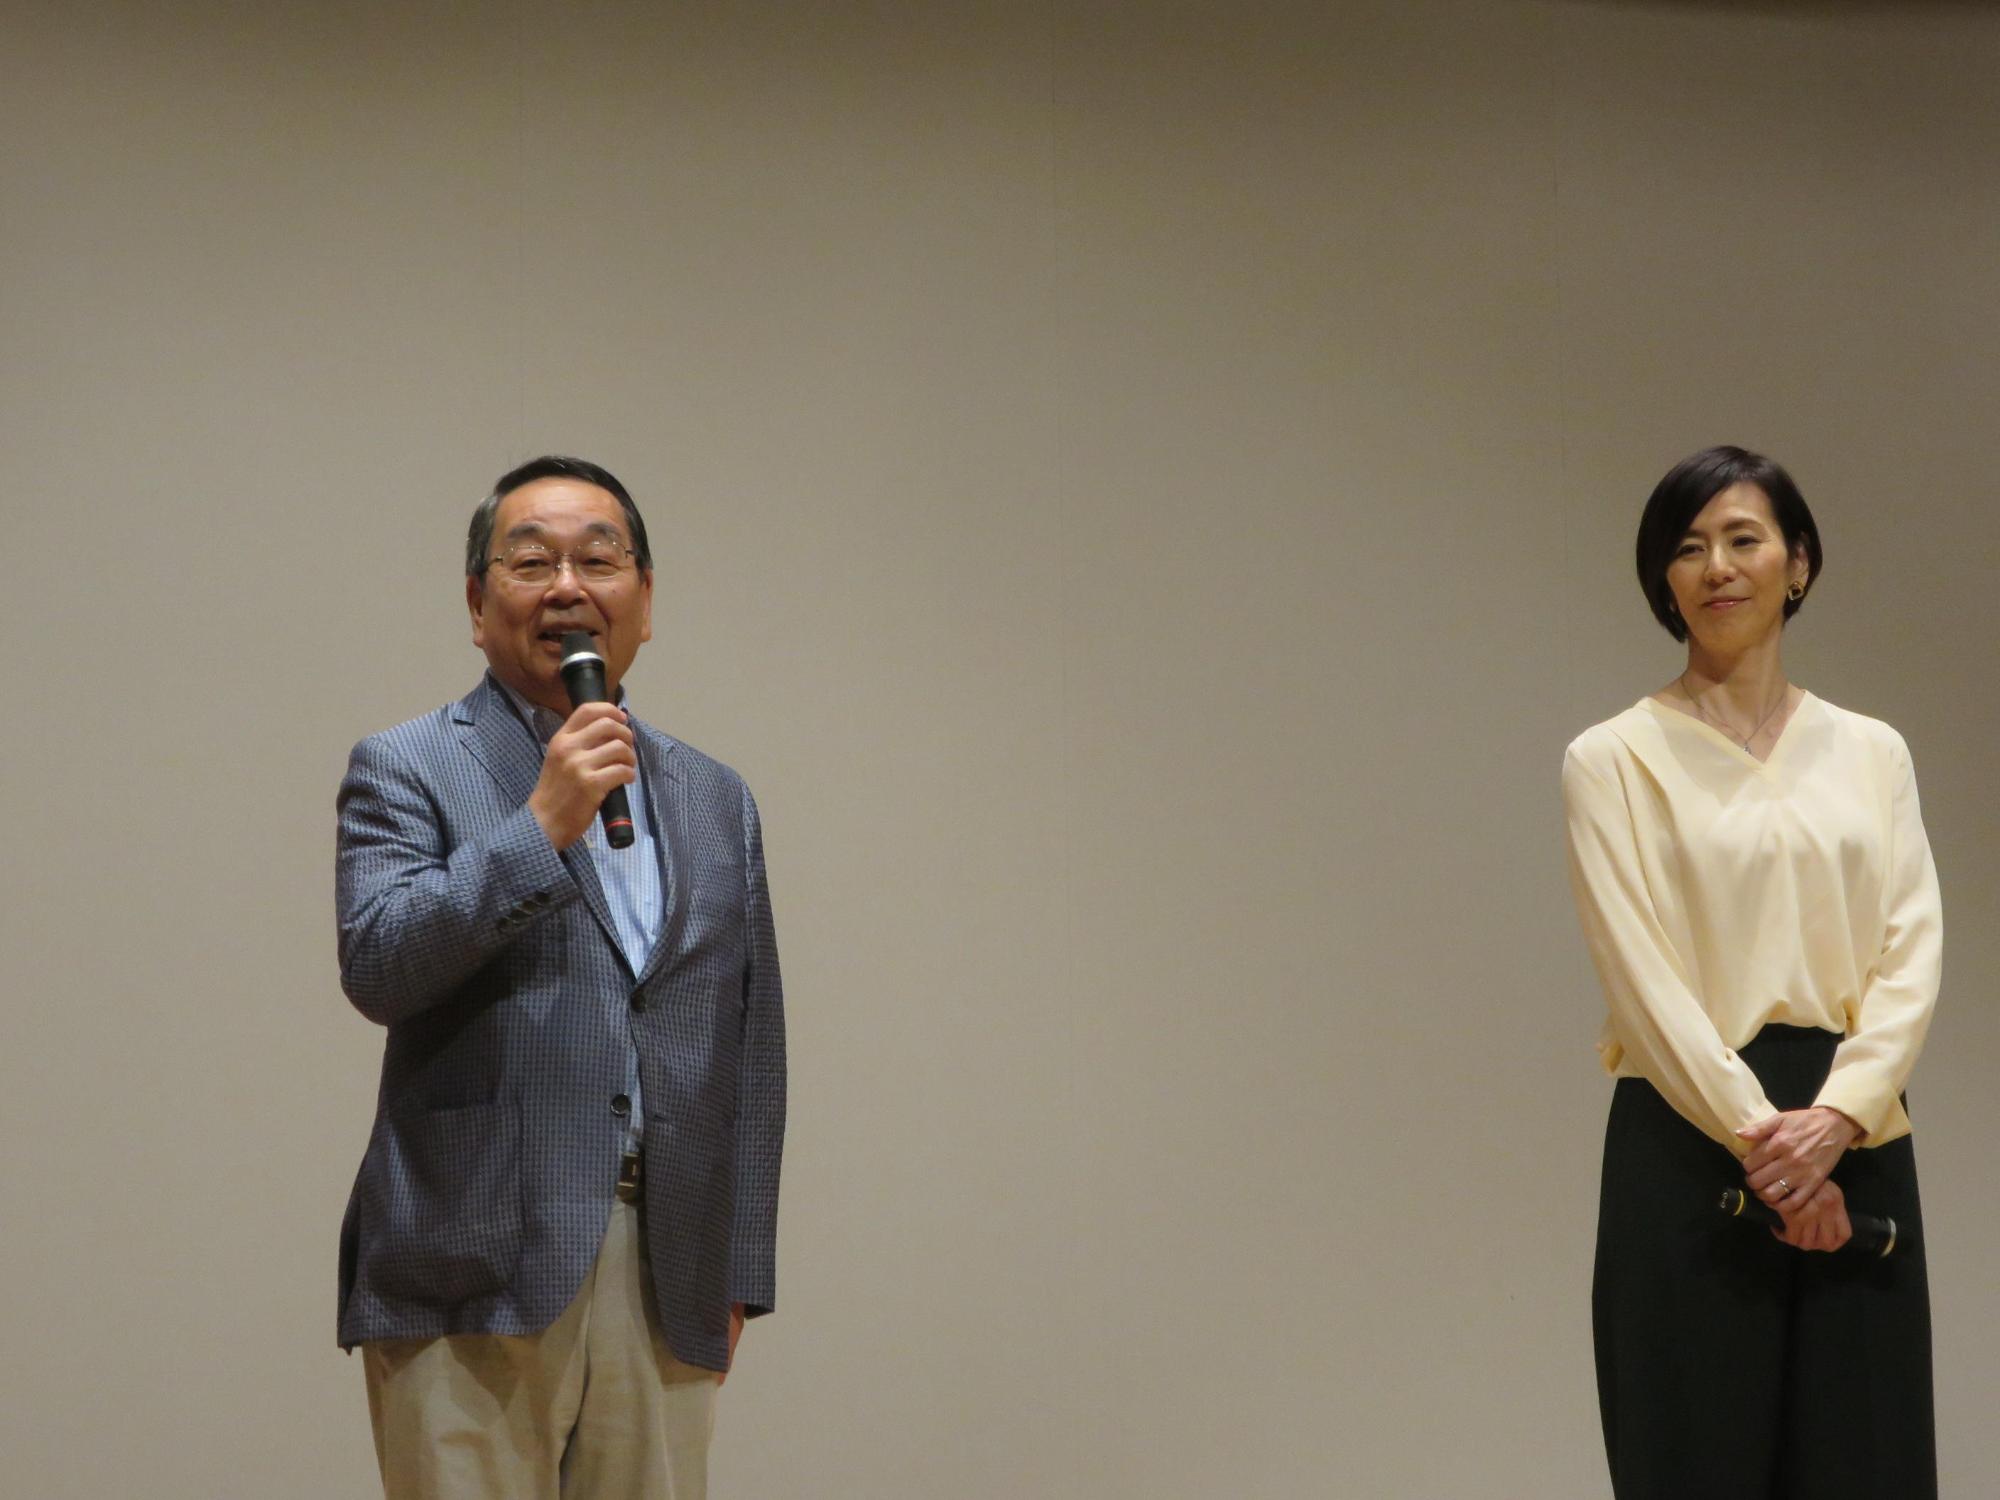 地域貢献イベント「スポーツ×健康＝地域活性化」にて挨拶をしている原田市長の写真